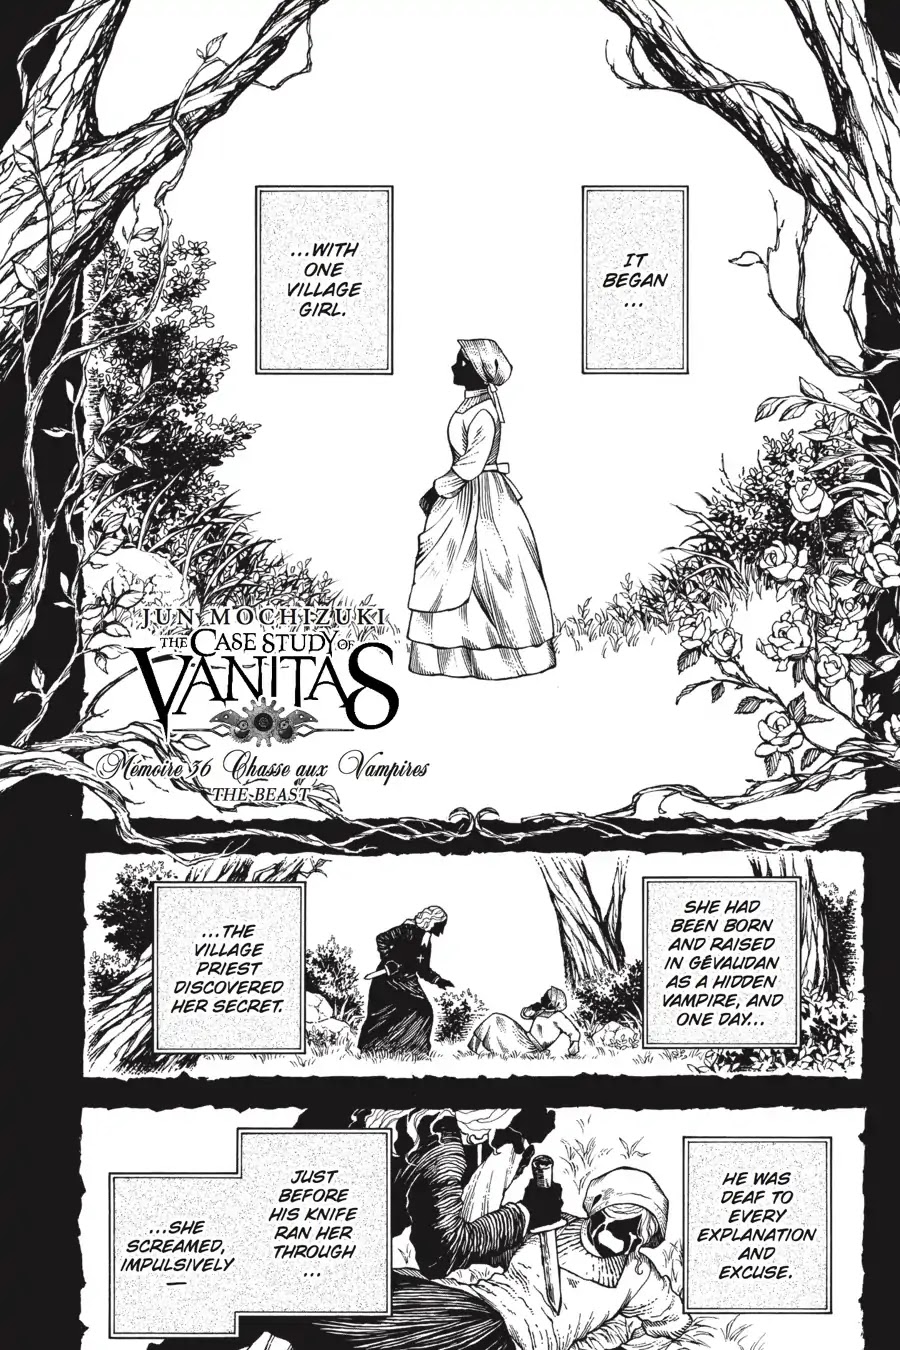 Vanitas No Shuki - Page 2